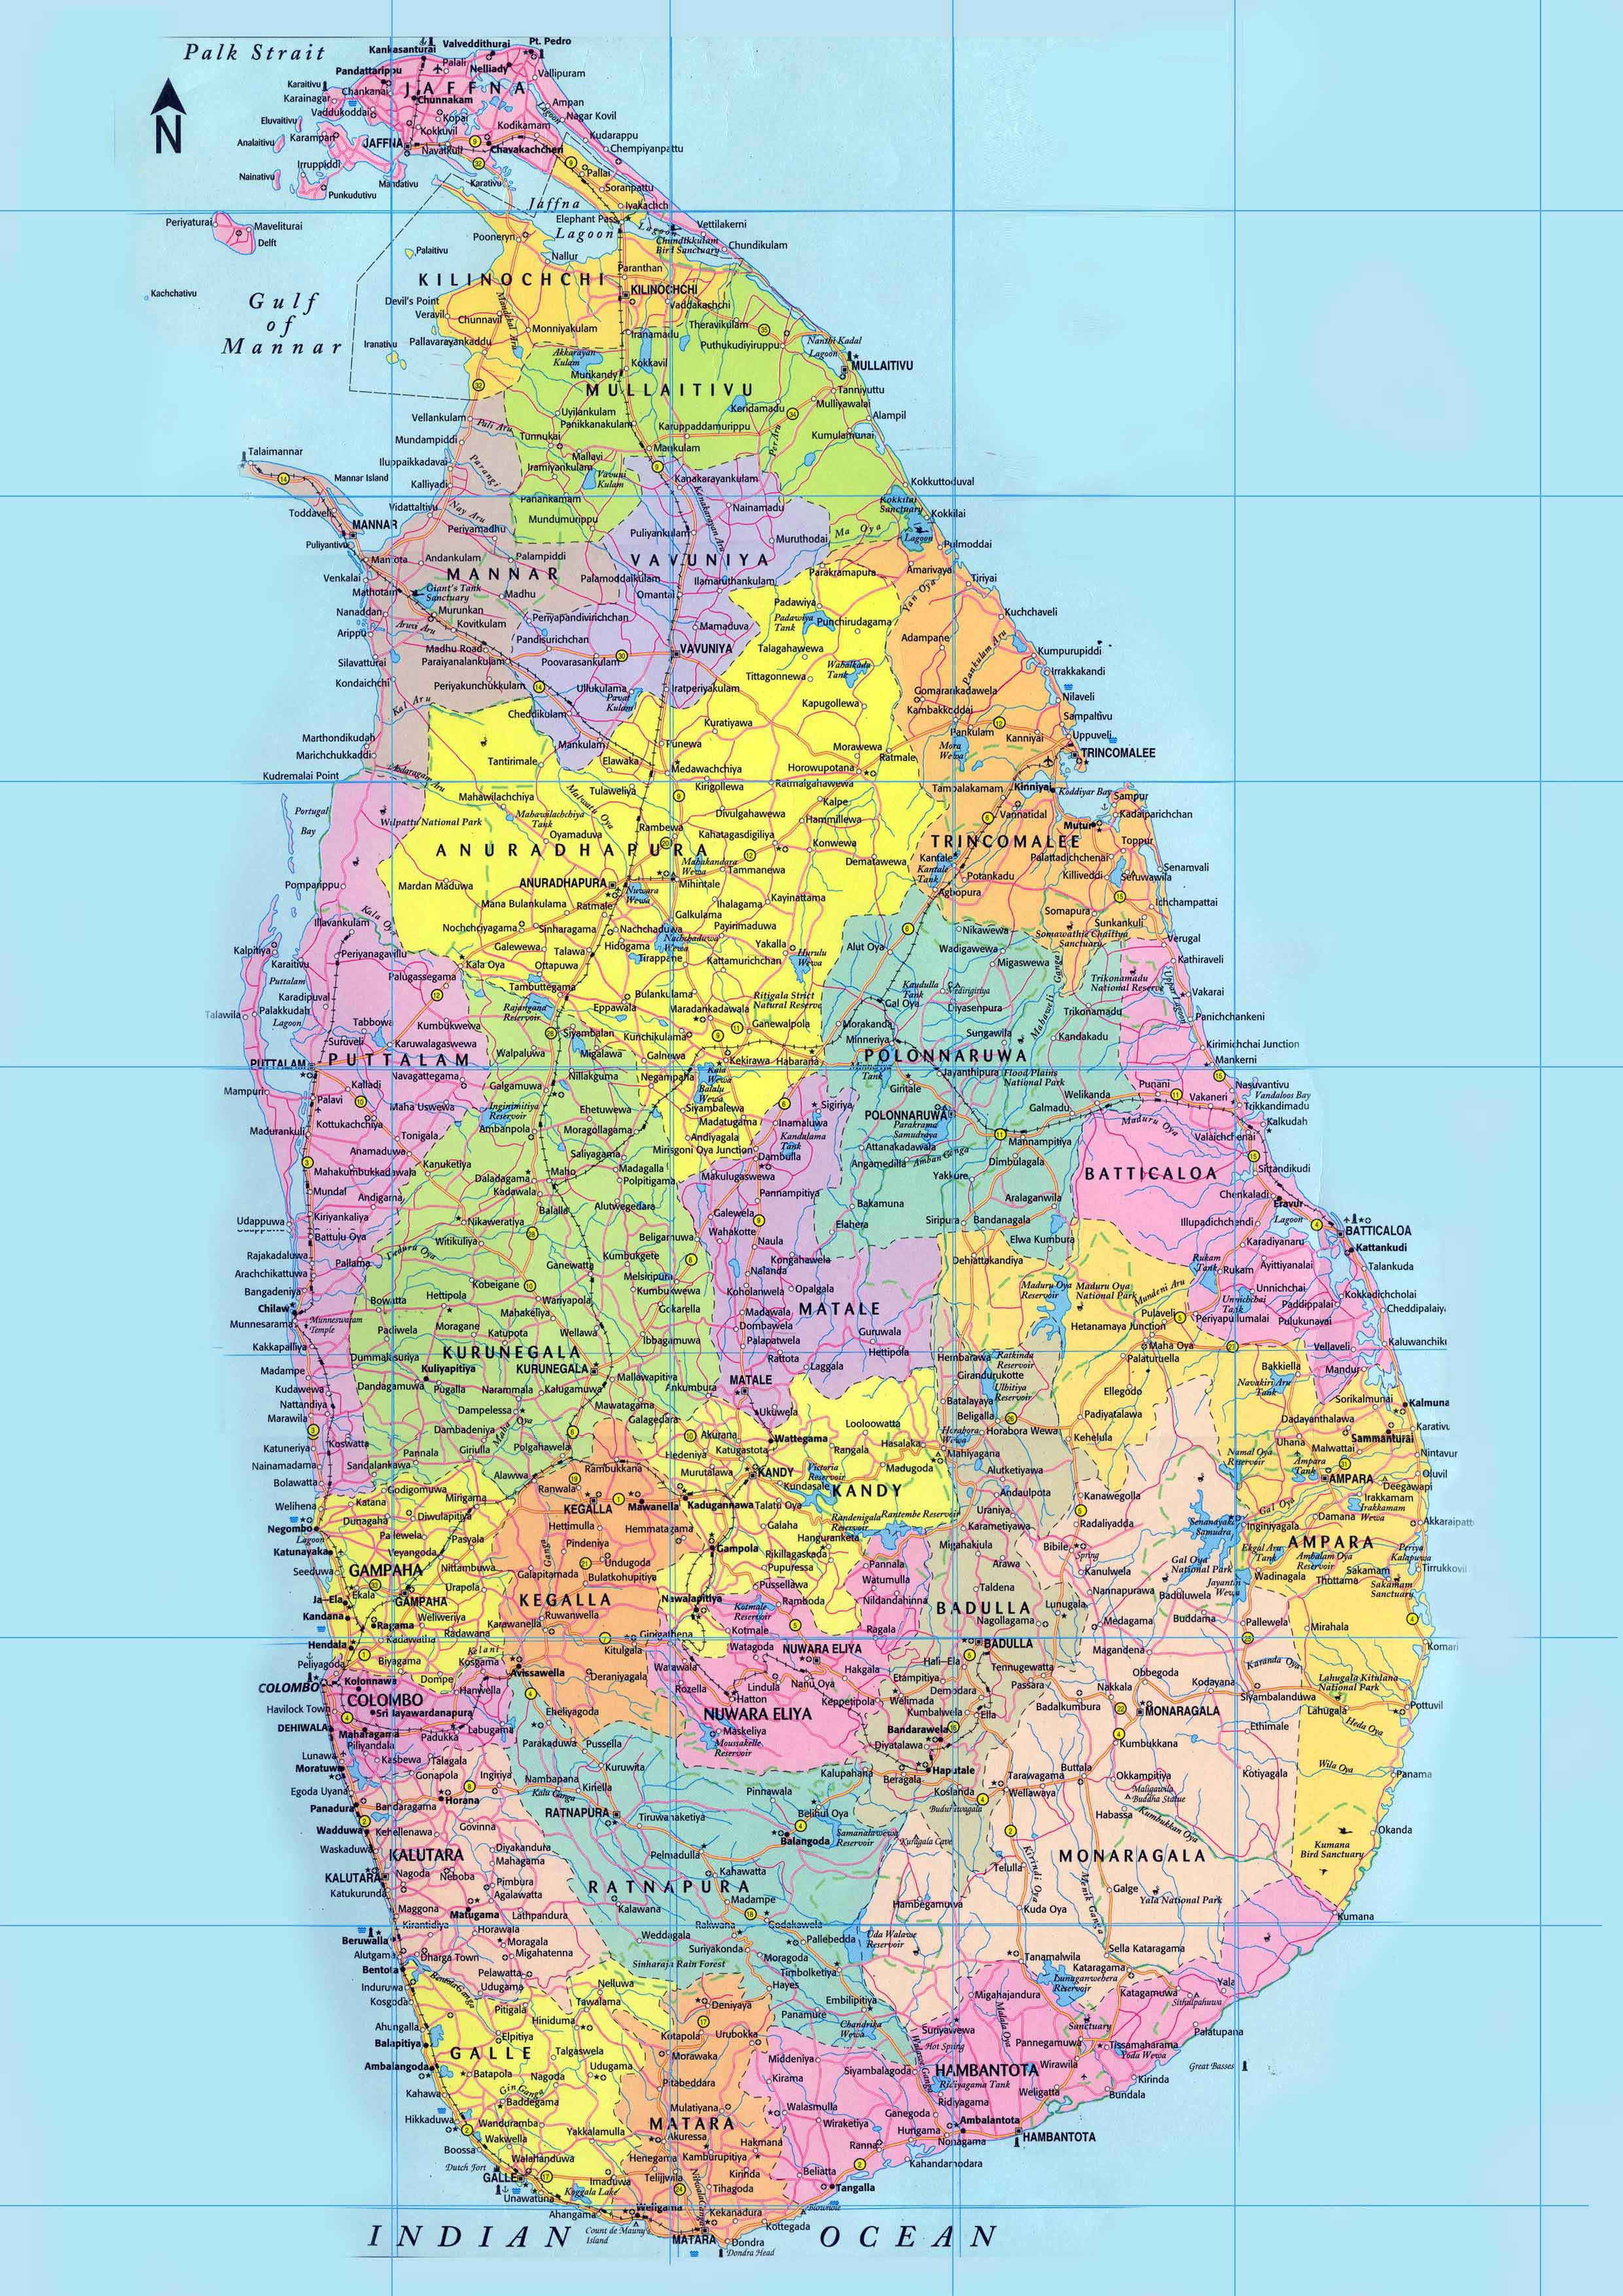 Blog De Geografia Mapa Do Sri Lanka Para Imprimir E C - vrogue.co